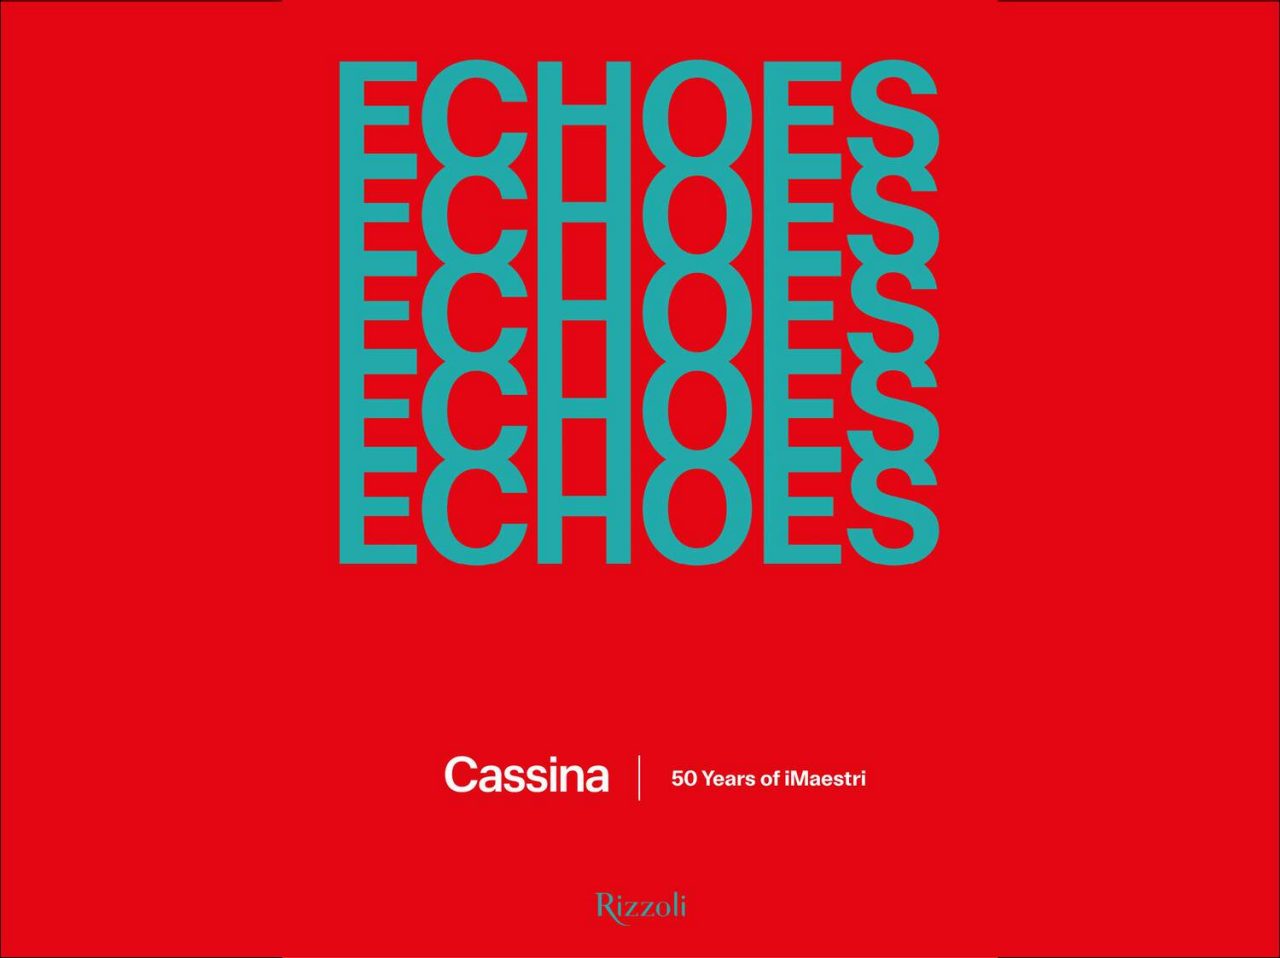 Copertina del libro ‘Echoes, Cassina. 50 Years of iMaestri’ 